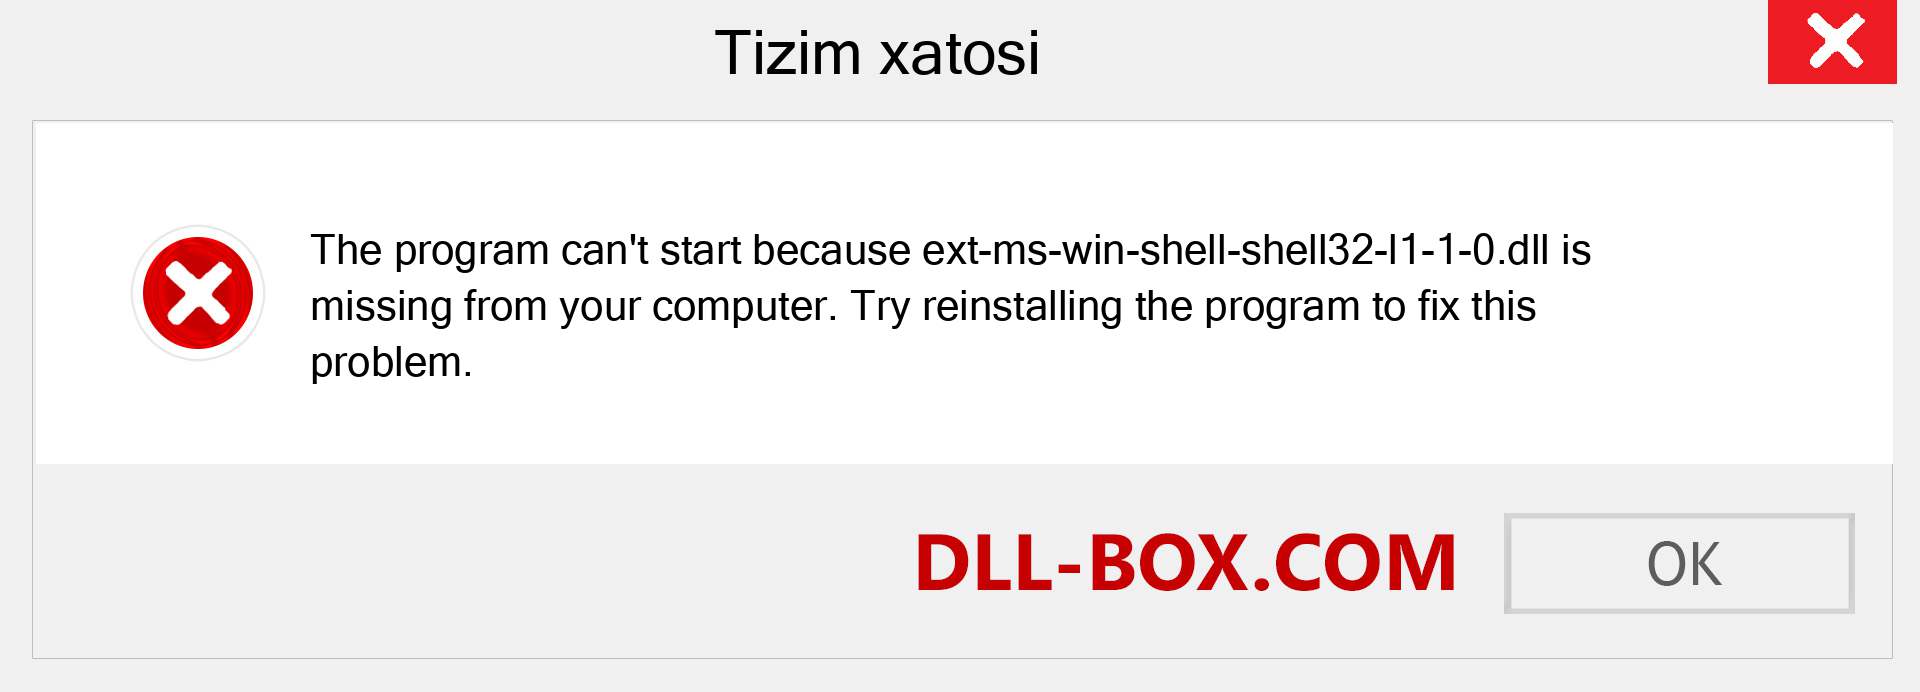 ext-ms-win-shell-shell32-l1-1-0.dll fayli yo'qolganmi?. Windows 7, 8, 10 uchun yuklab olish - Windowsda ext-ms-win-shell-shell32-l1-1-0 dll etishmayotgan xatoni tuzating, rasmlar, rasmlar